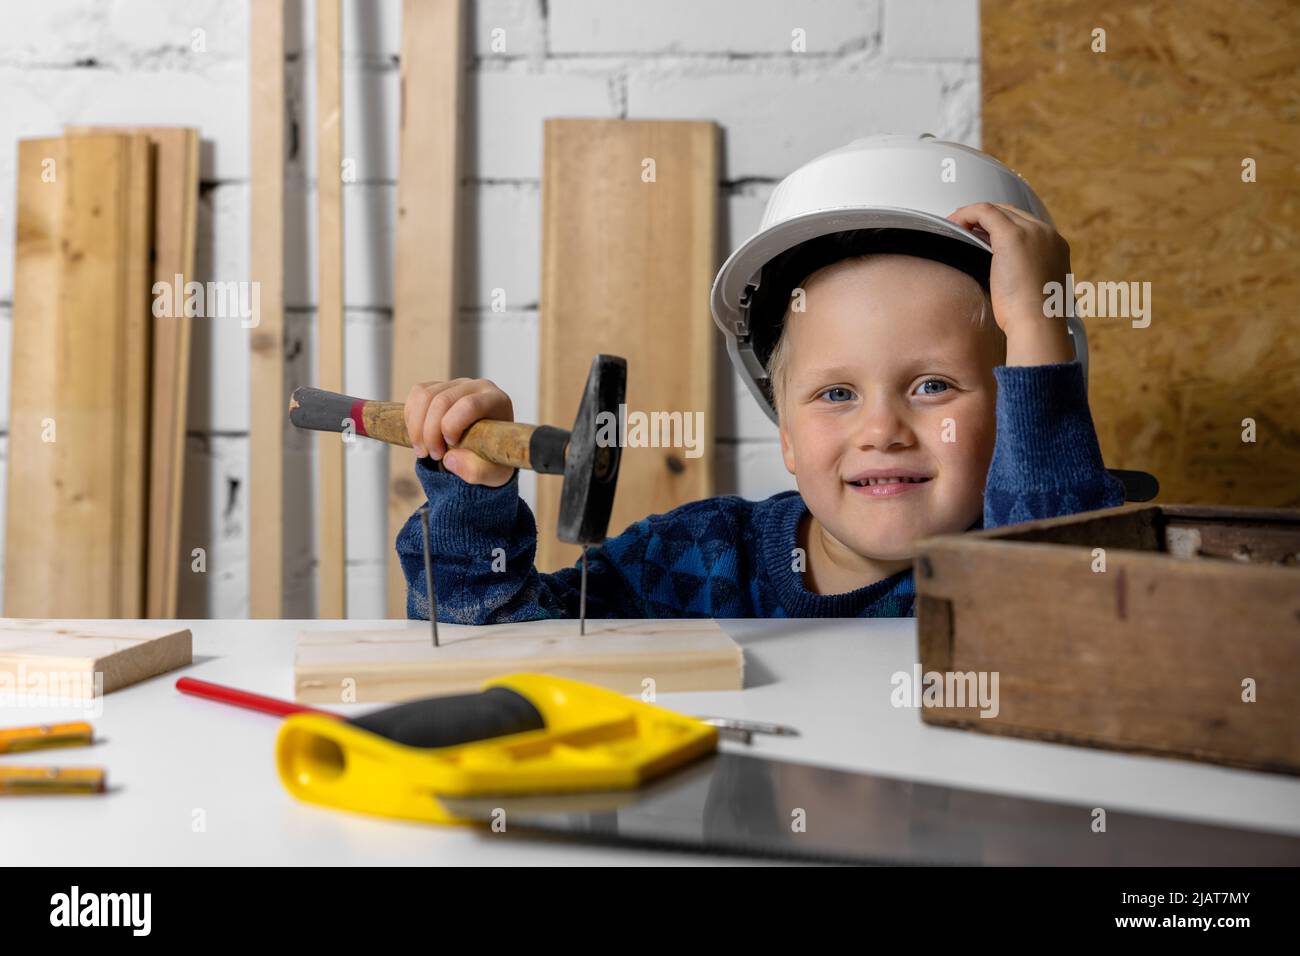 feliz niño sonriente con casco y martillo en la mano en el taller de carpintería Foto de stock